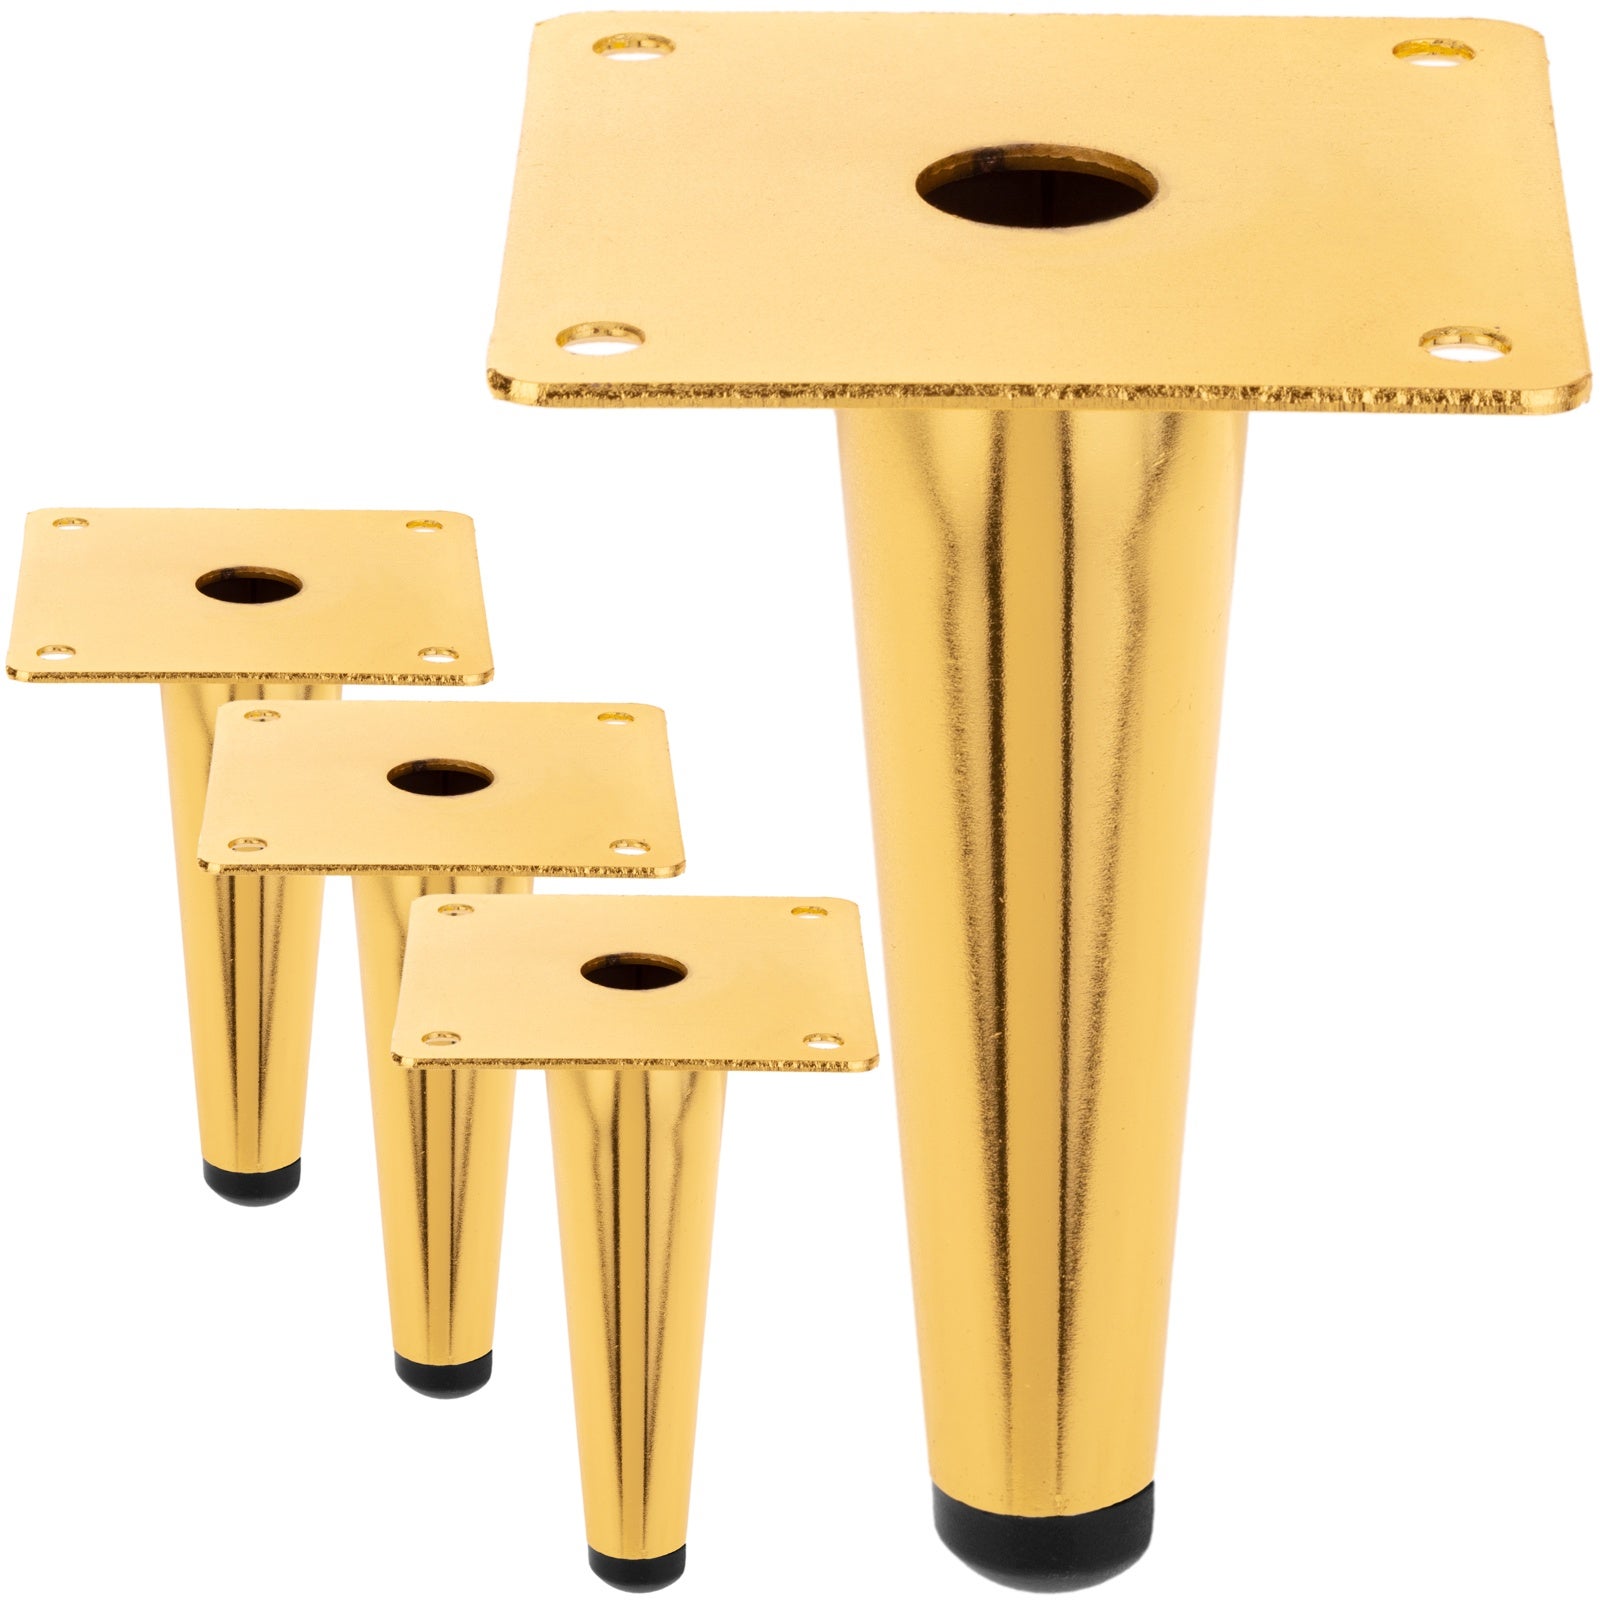 Pack de 4 patas cónicas rectas de repuesto para muebles de 12 cm doradas